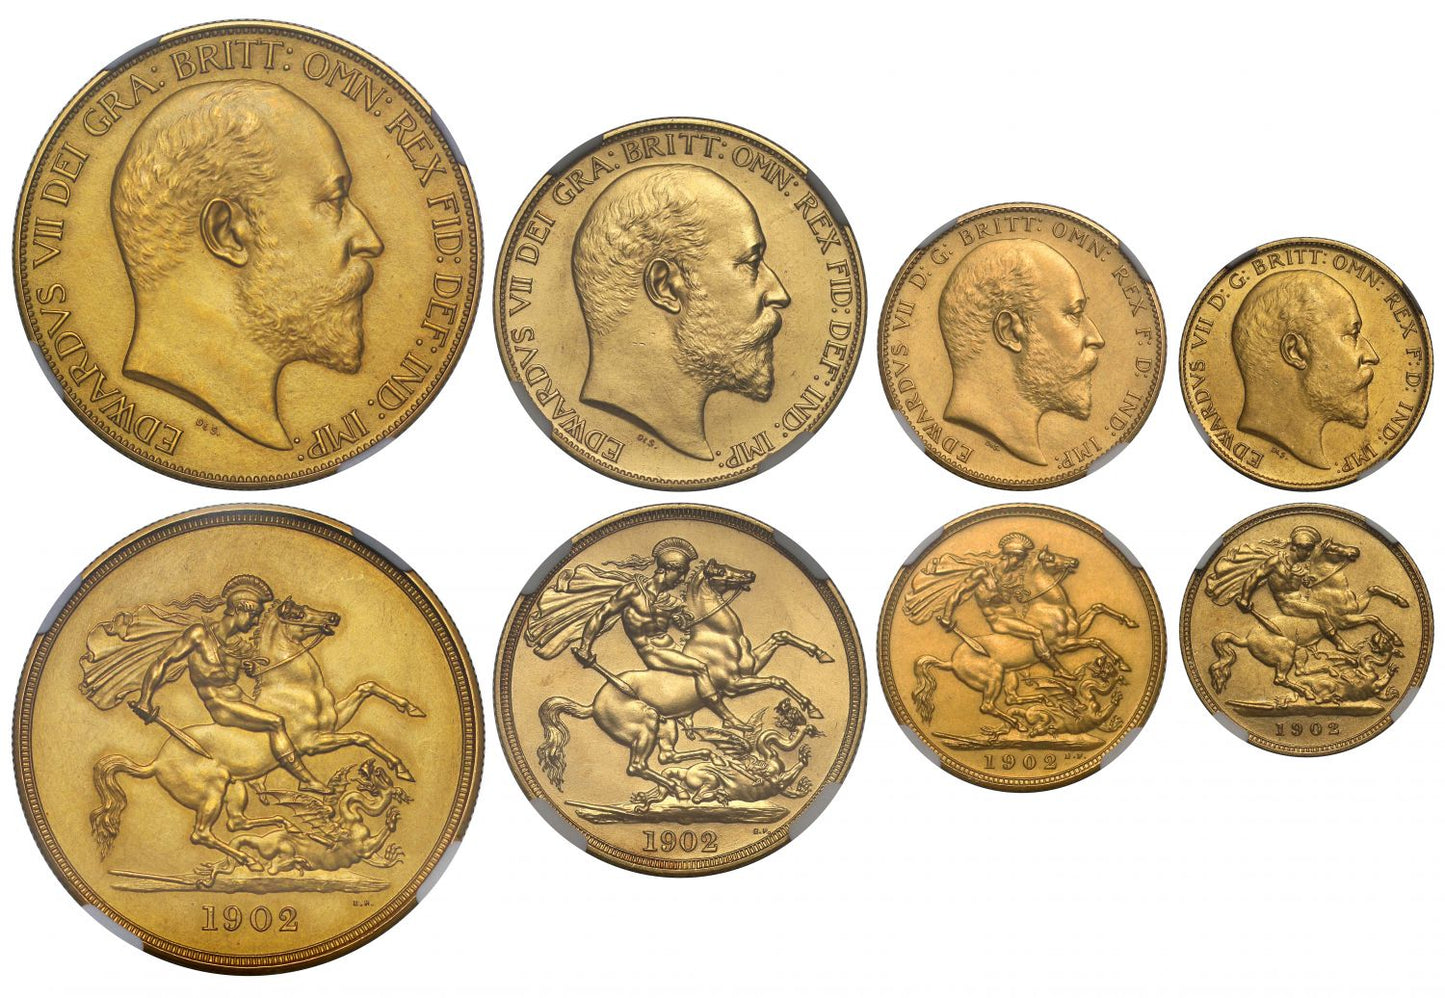 Edward VII 1902 4-coin matt proof Set PF60-61 MATTE, £5, £2, Sovereign & Half